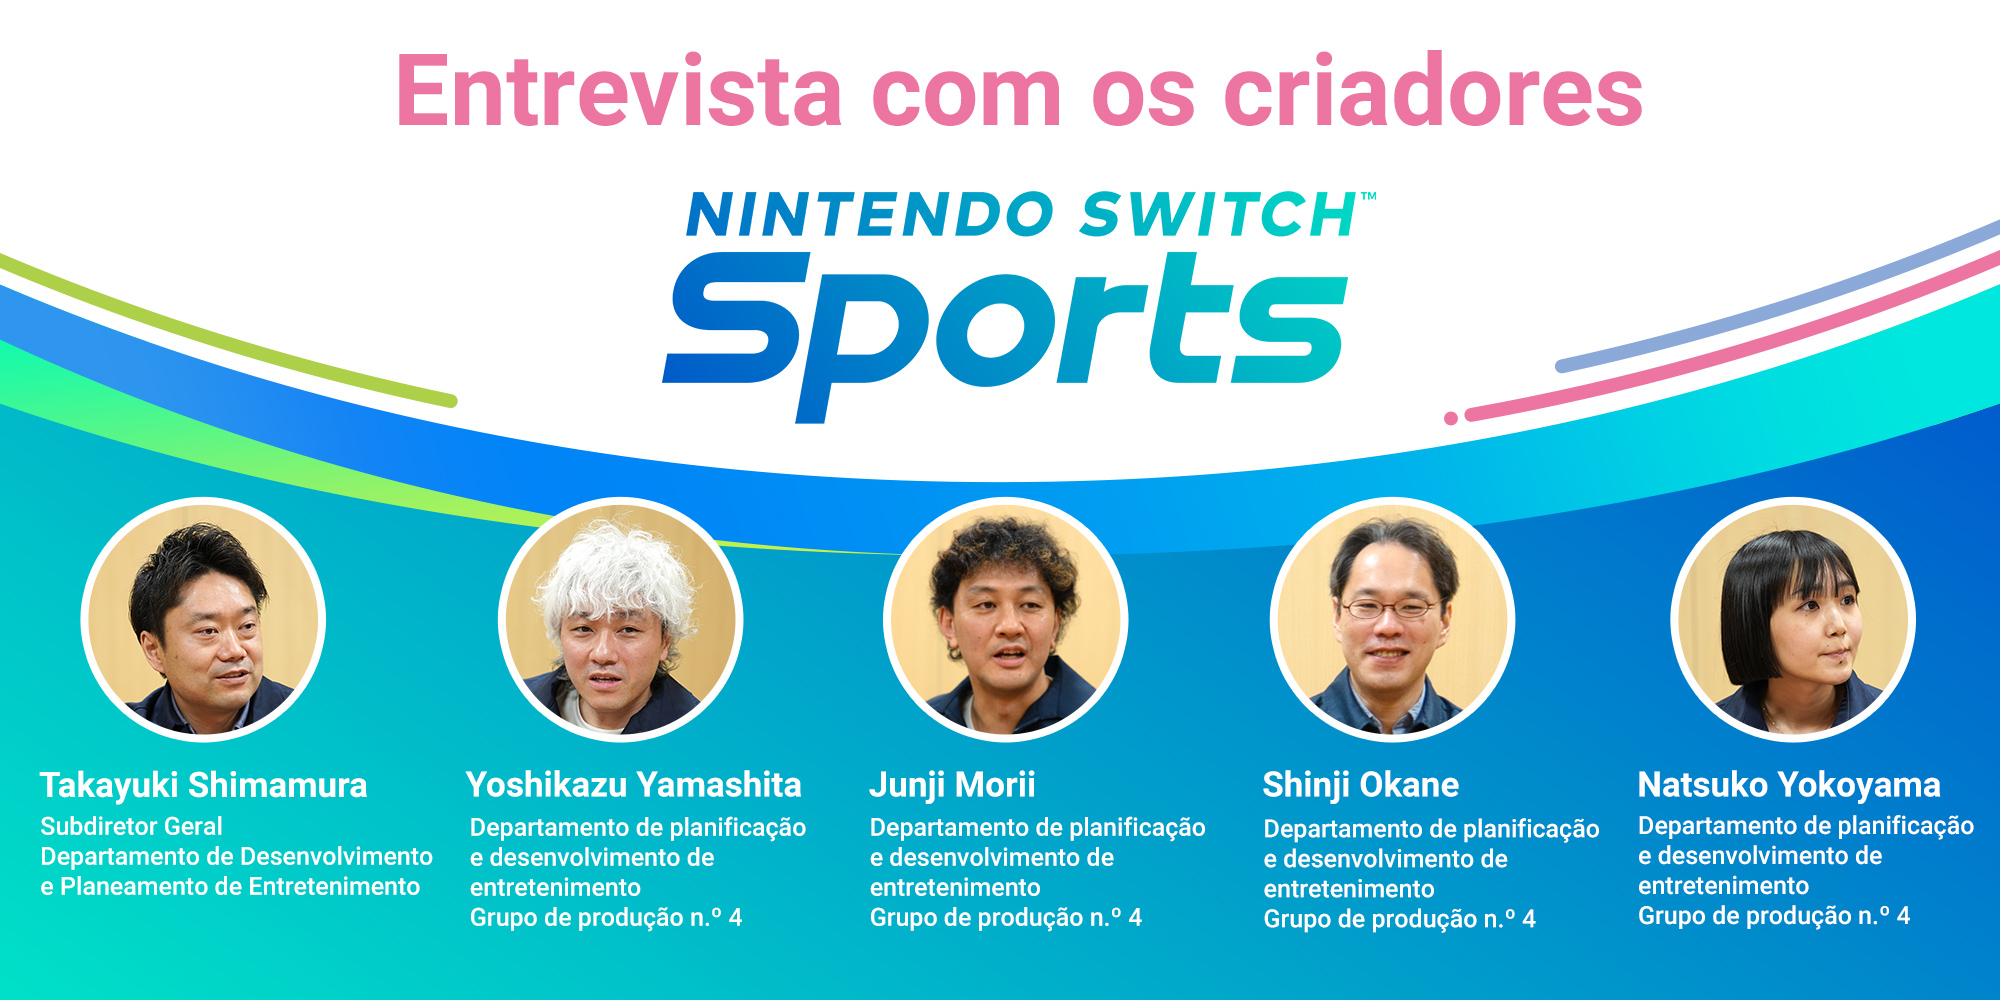 Entrevista com os criadores – Edição 5: Nintendo Switch Sports